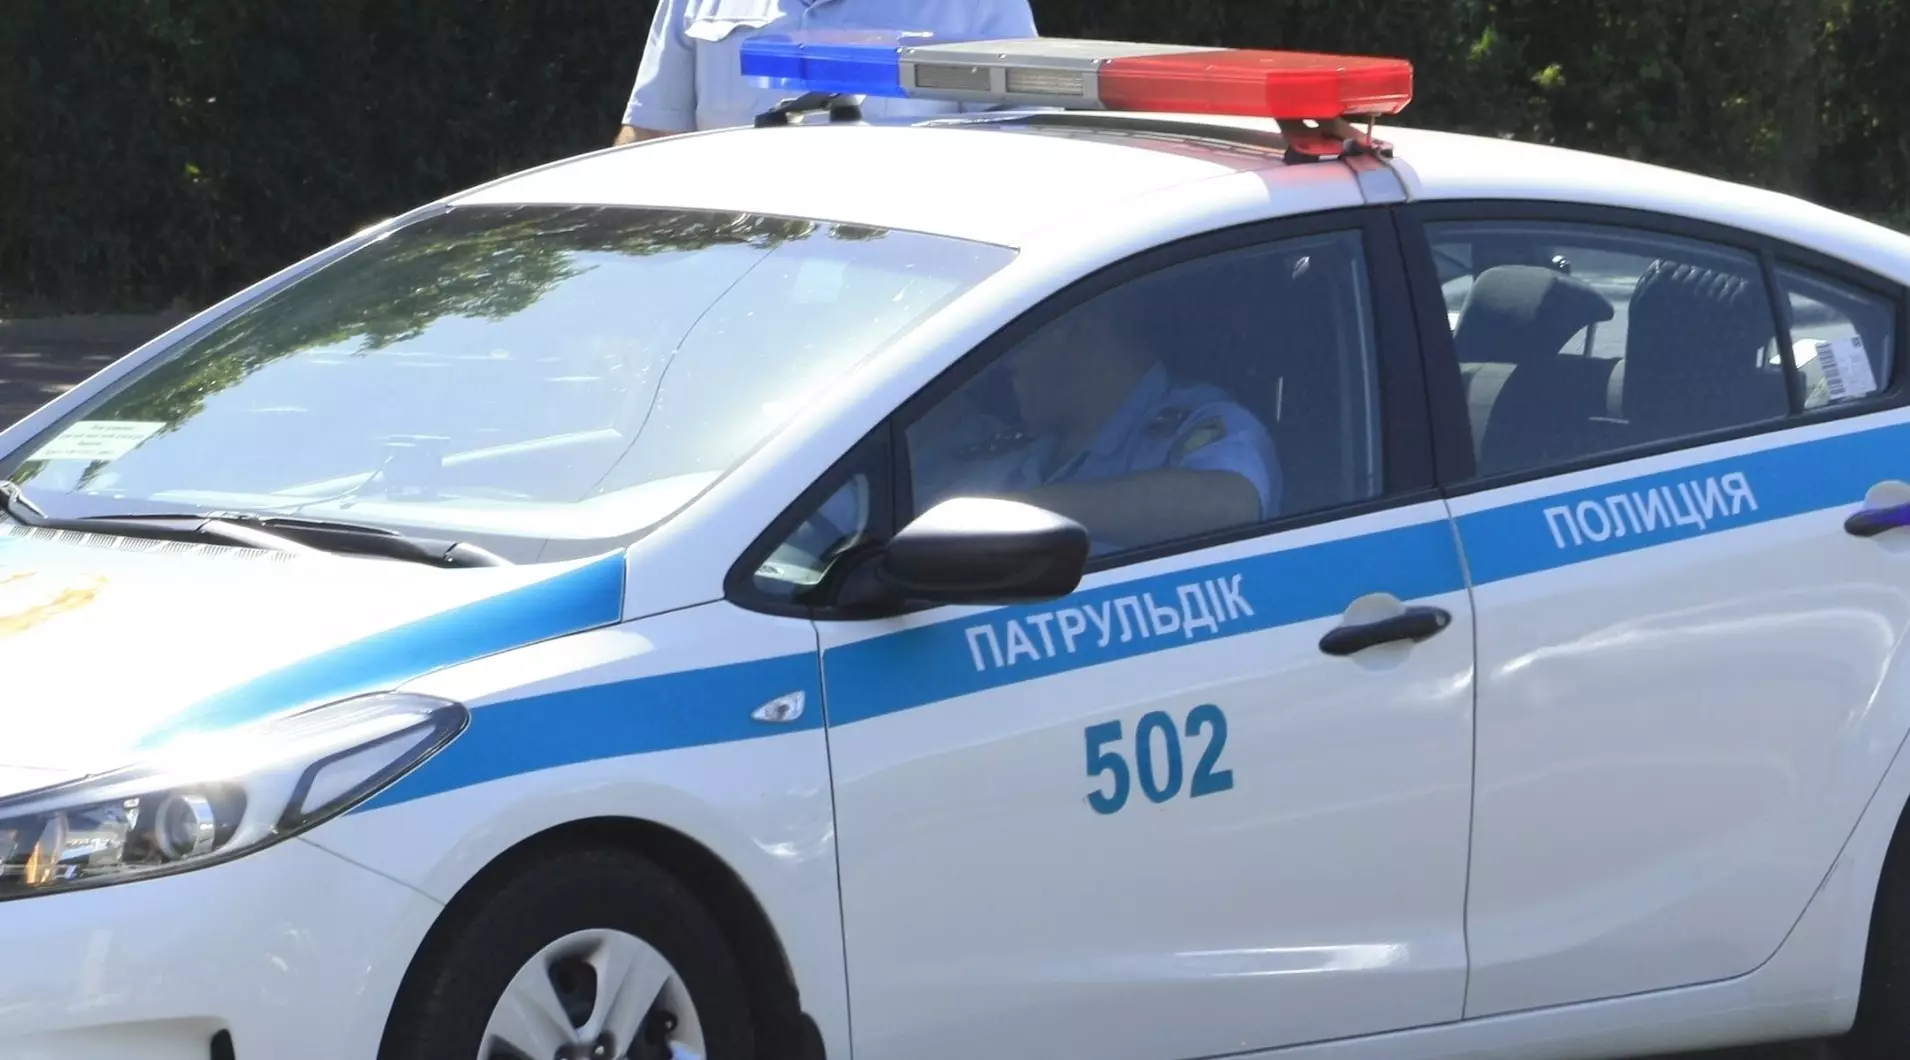 Подозреваемый в совершении смертельной поножовщины на улице задержан в Павлодаре